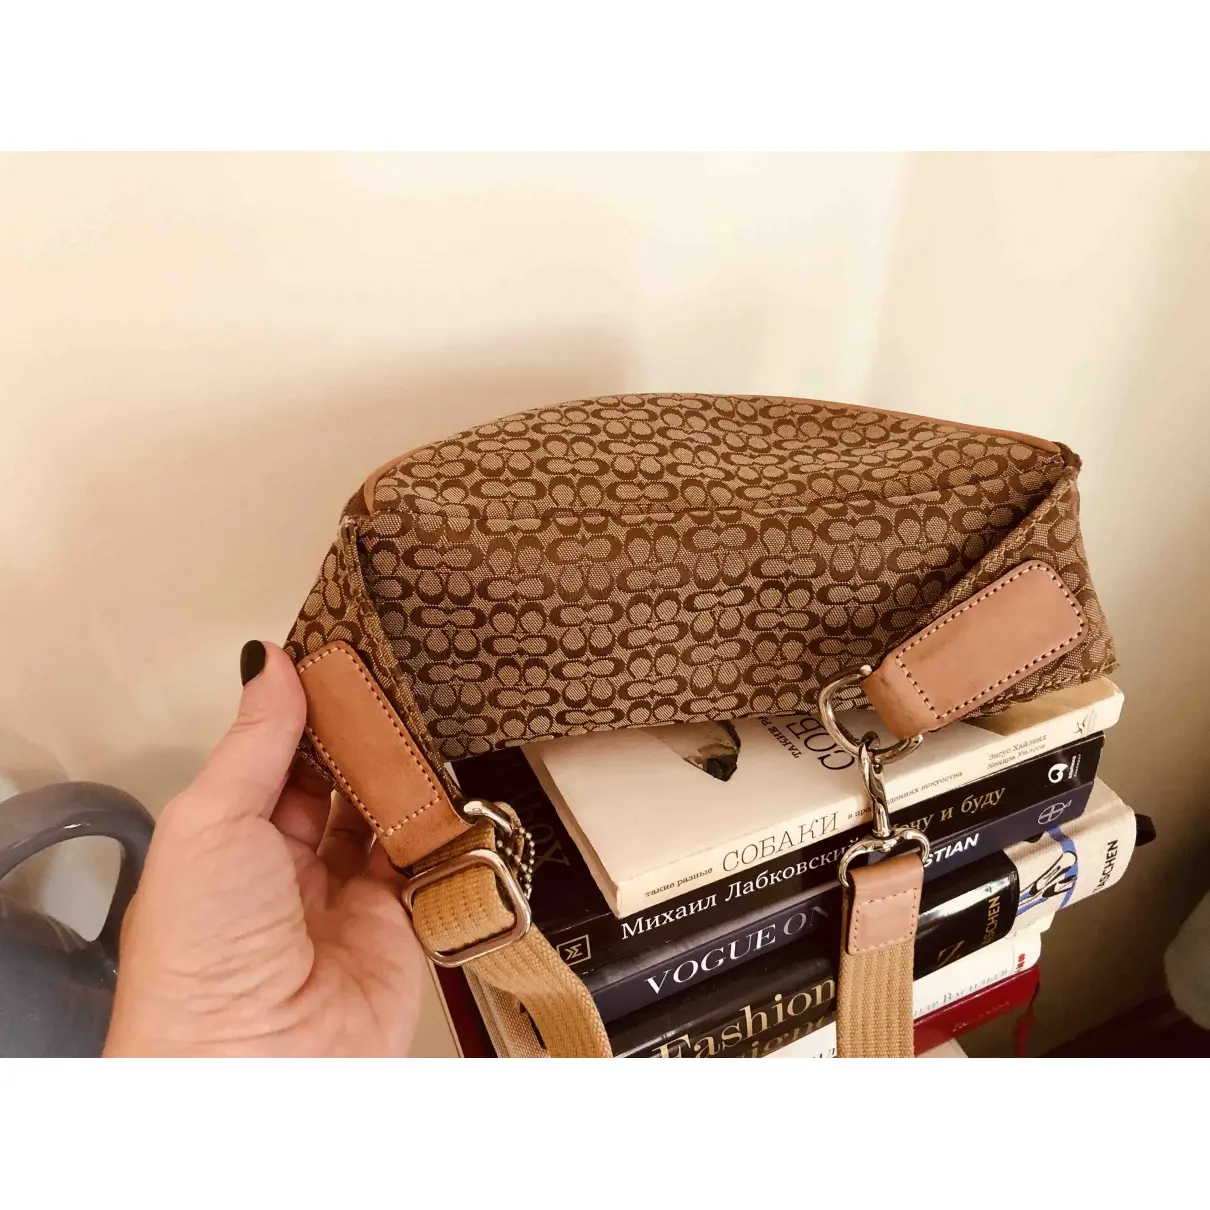 Coach Cloth handbag for sale